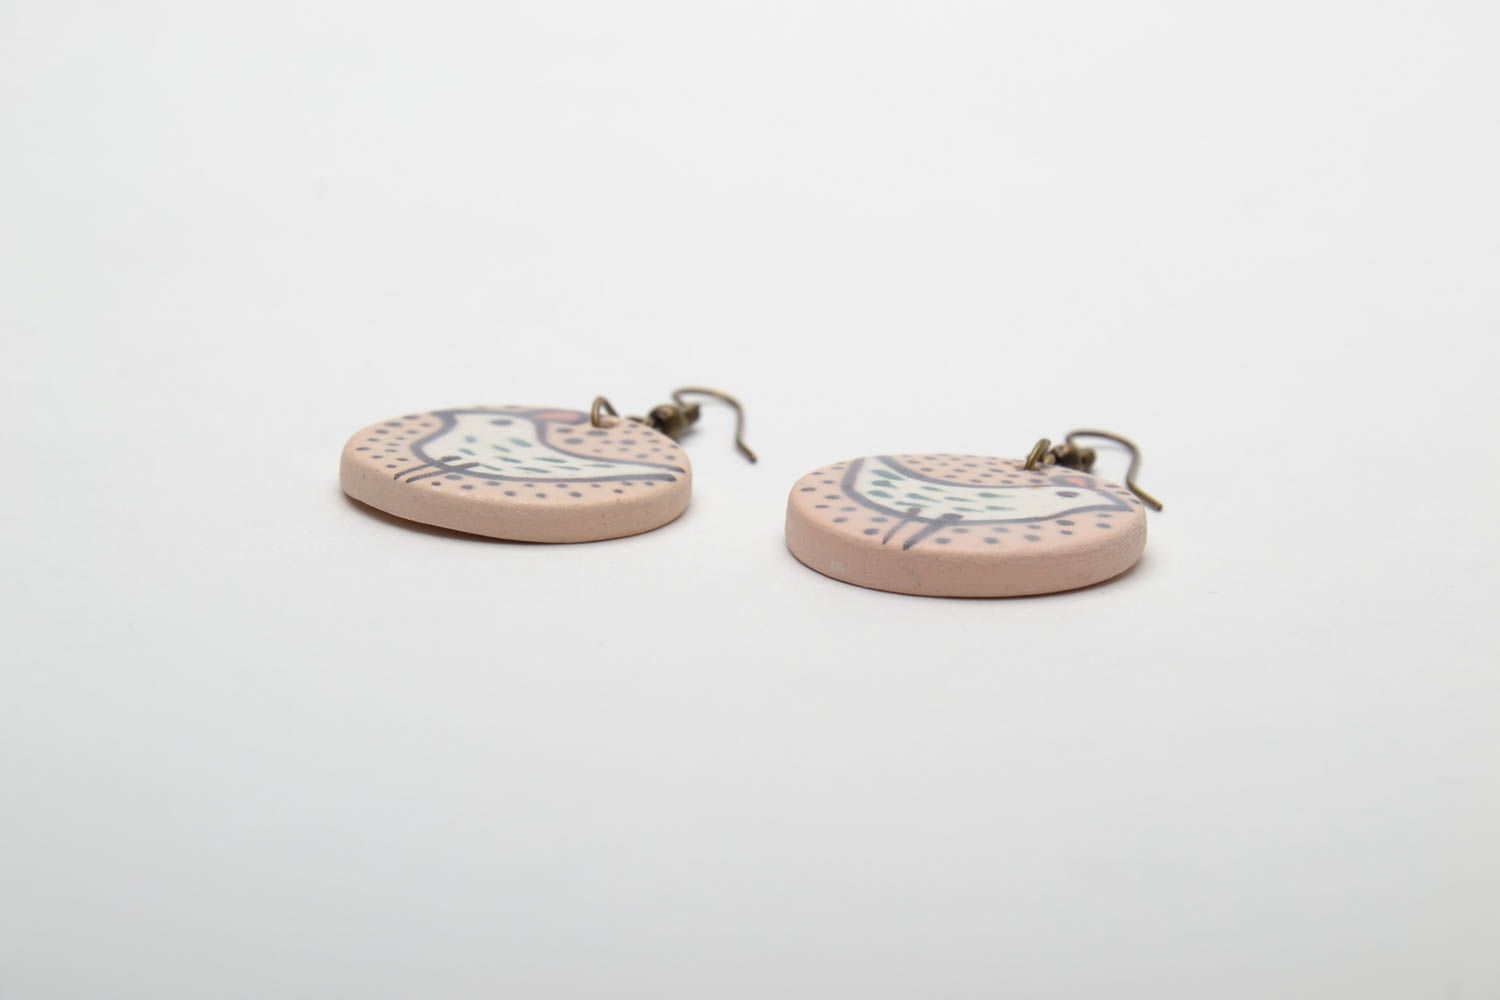 Круглые керамические сережки расписанные ангобами и глазурью фото 3